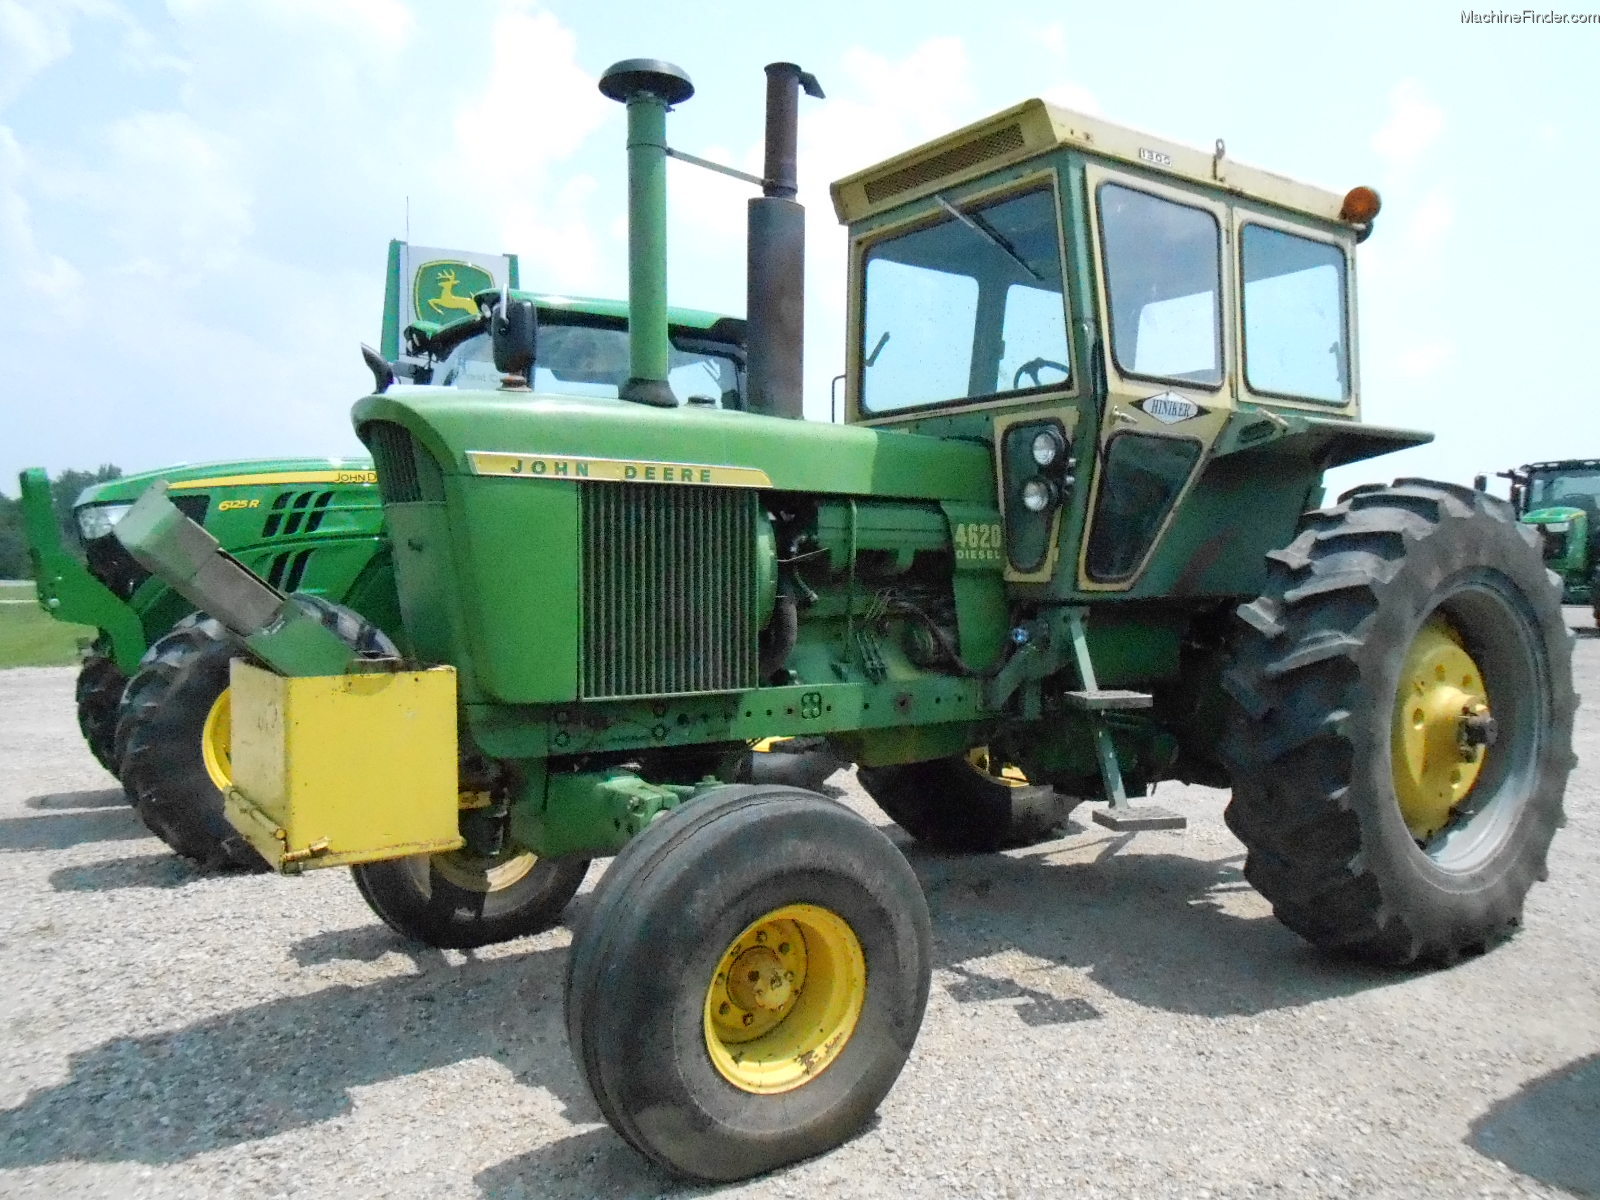 1972 John Deere 4620 Tractors - Row Crop (+100hp) - John Deere MachineFinder